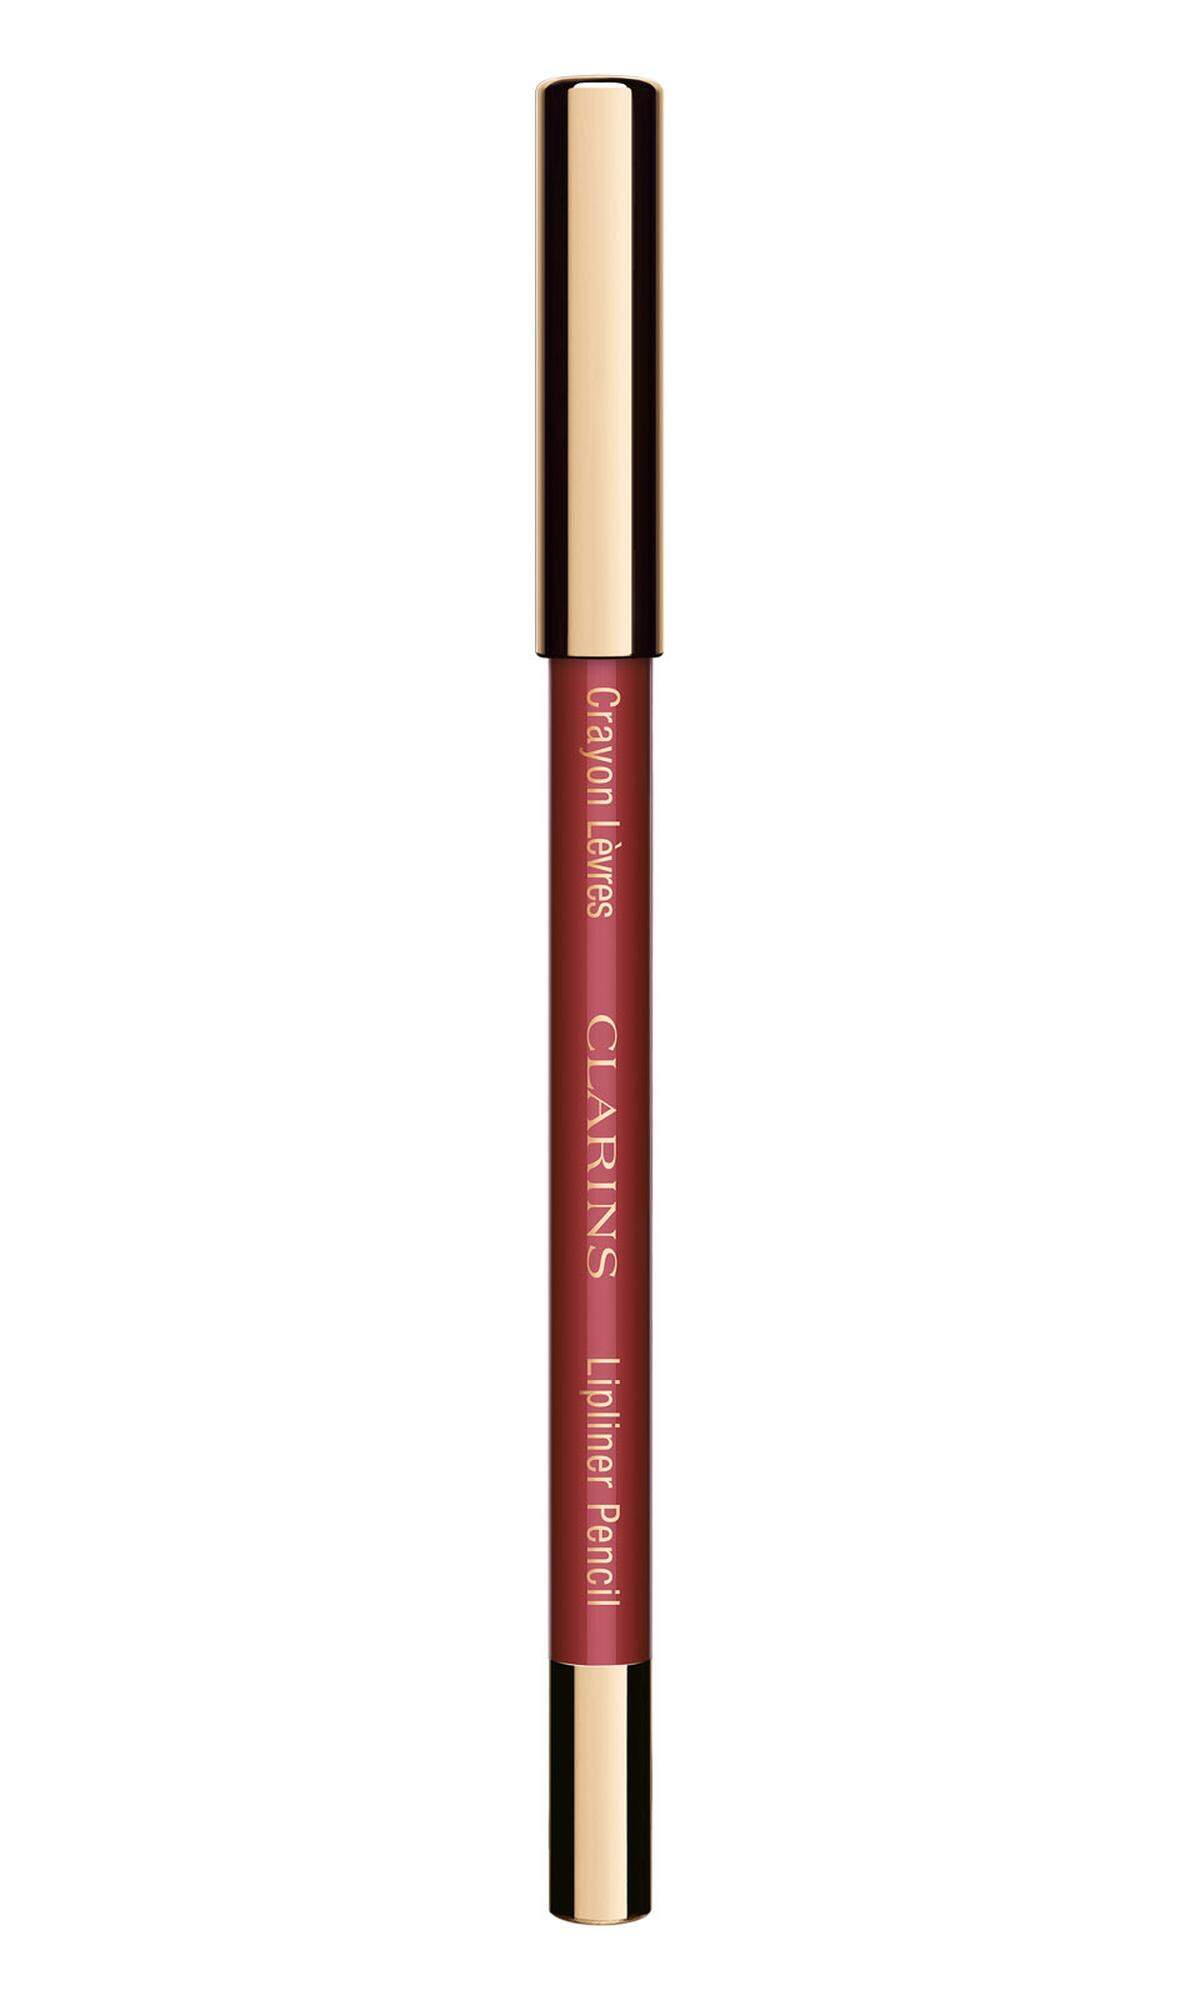  ­ Lippenkonturenstift „Crayon Lèvres“ von Clarins in „Roseberry“, 17,95 Euro.